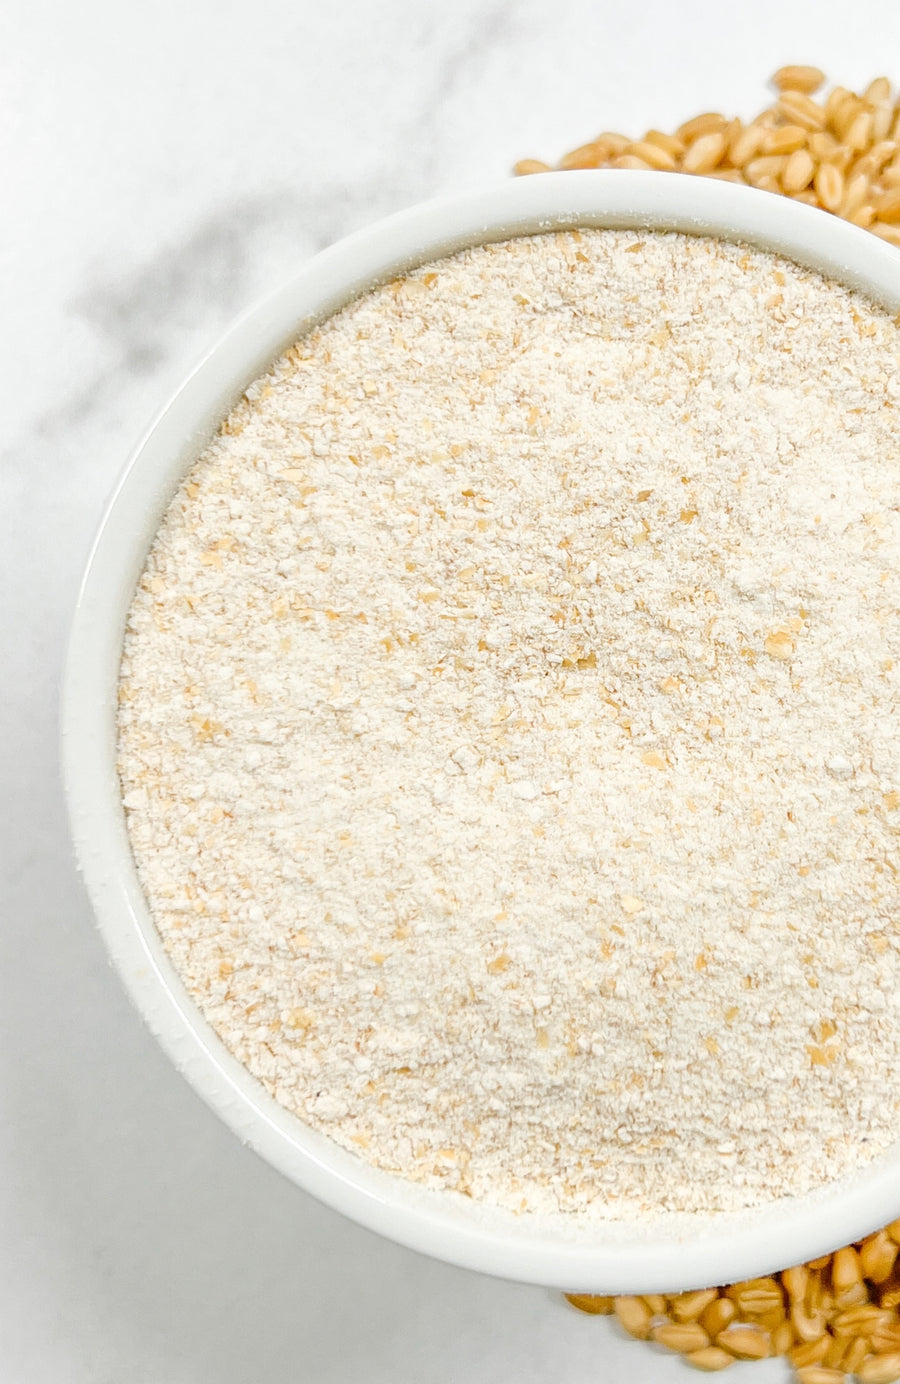 Multi-Purpose Flour | 3 LB